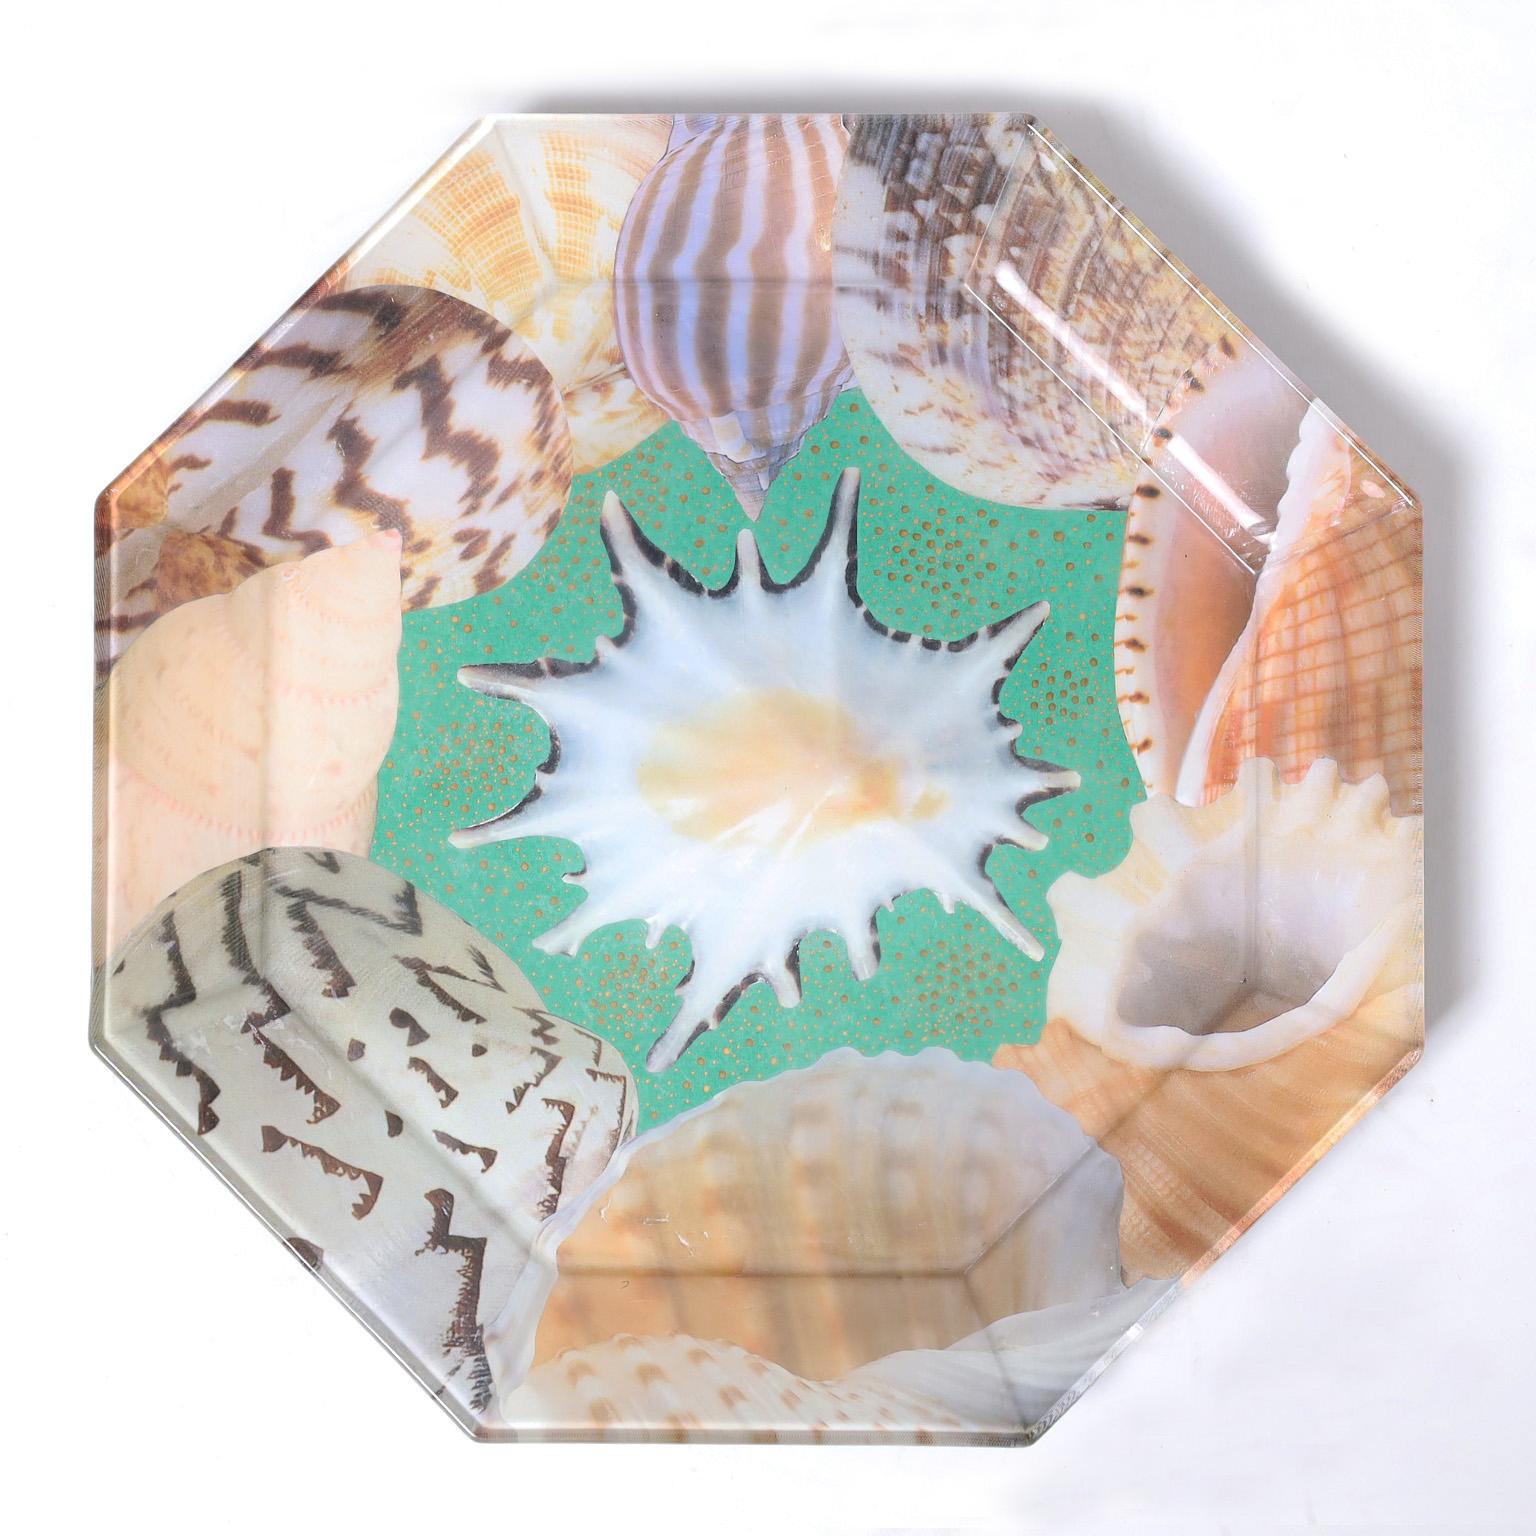 Ensemble exceptionnel de huit assiettes en verre de forme octogonale décorées de coquillages selon une technique fantaisiste de découpage inversé. Signé Pablo Manzoni au dos. 